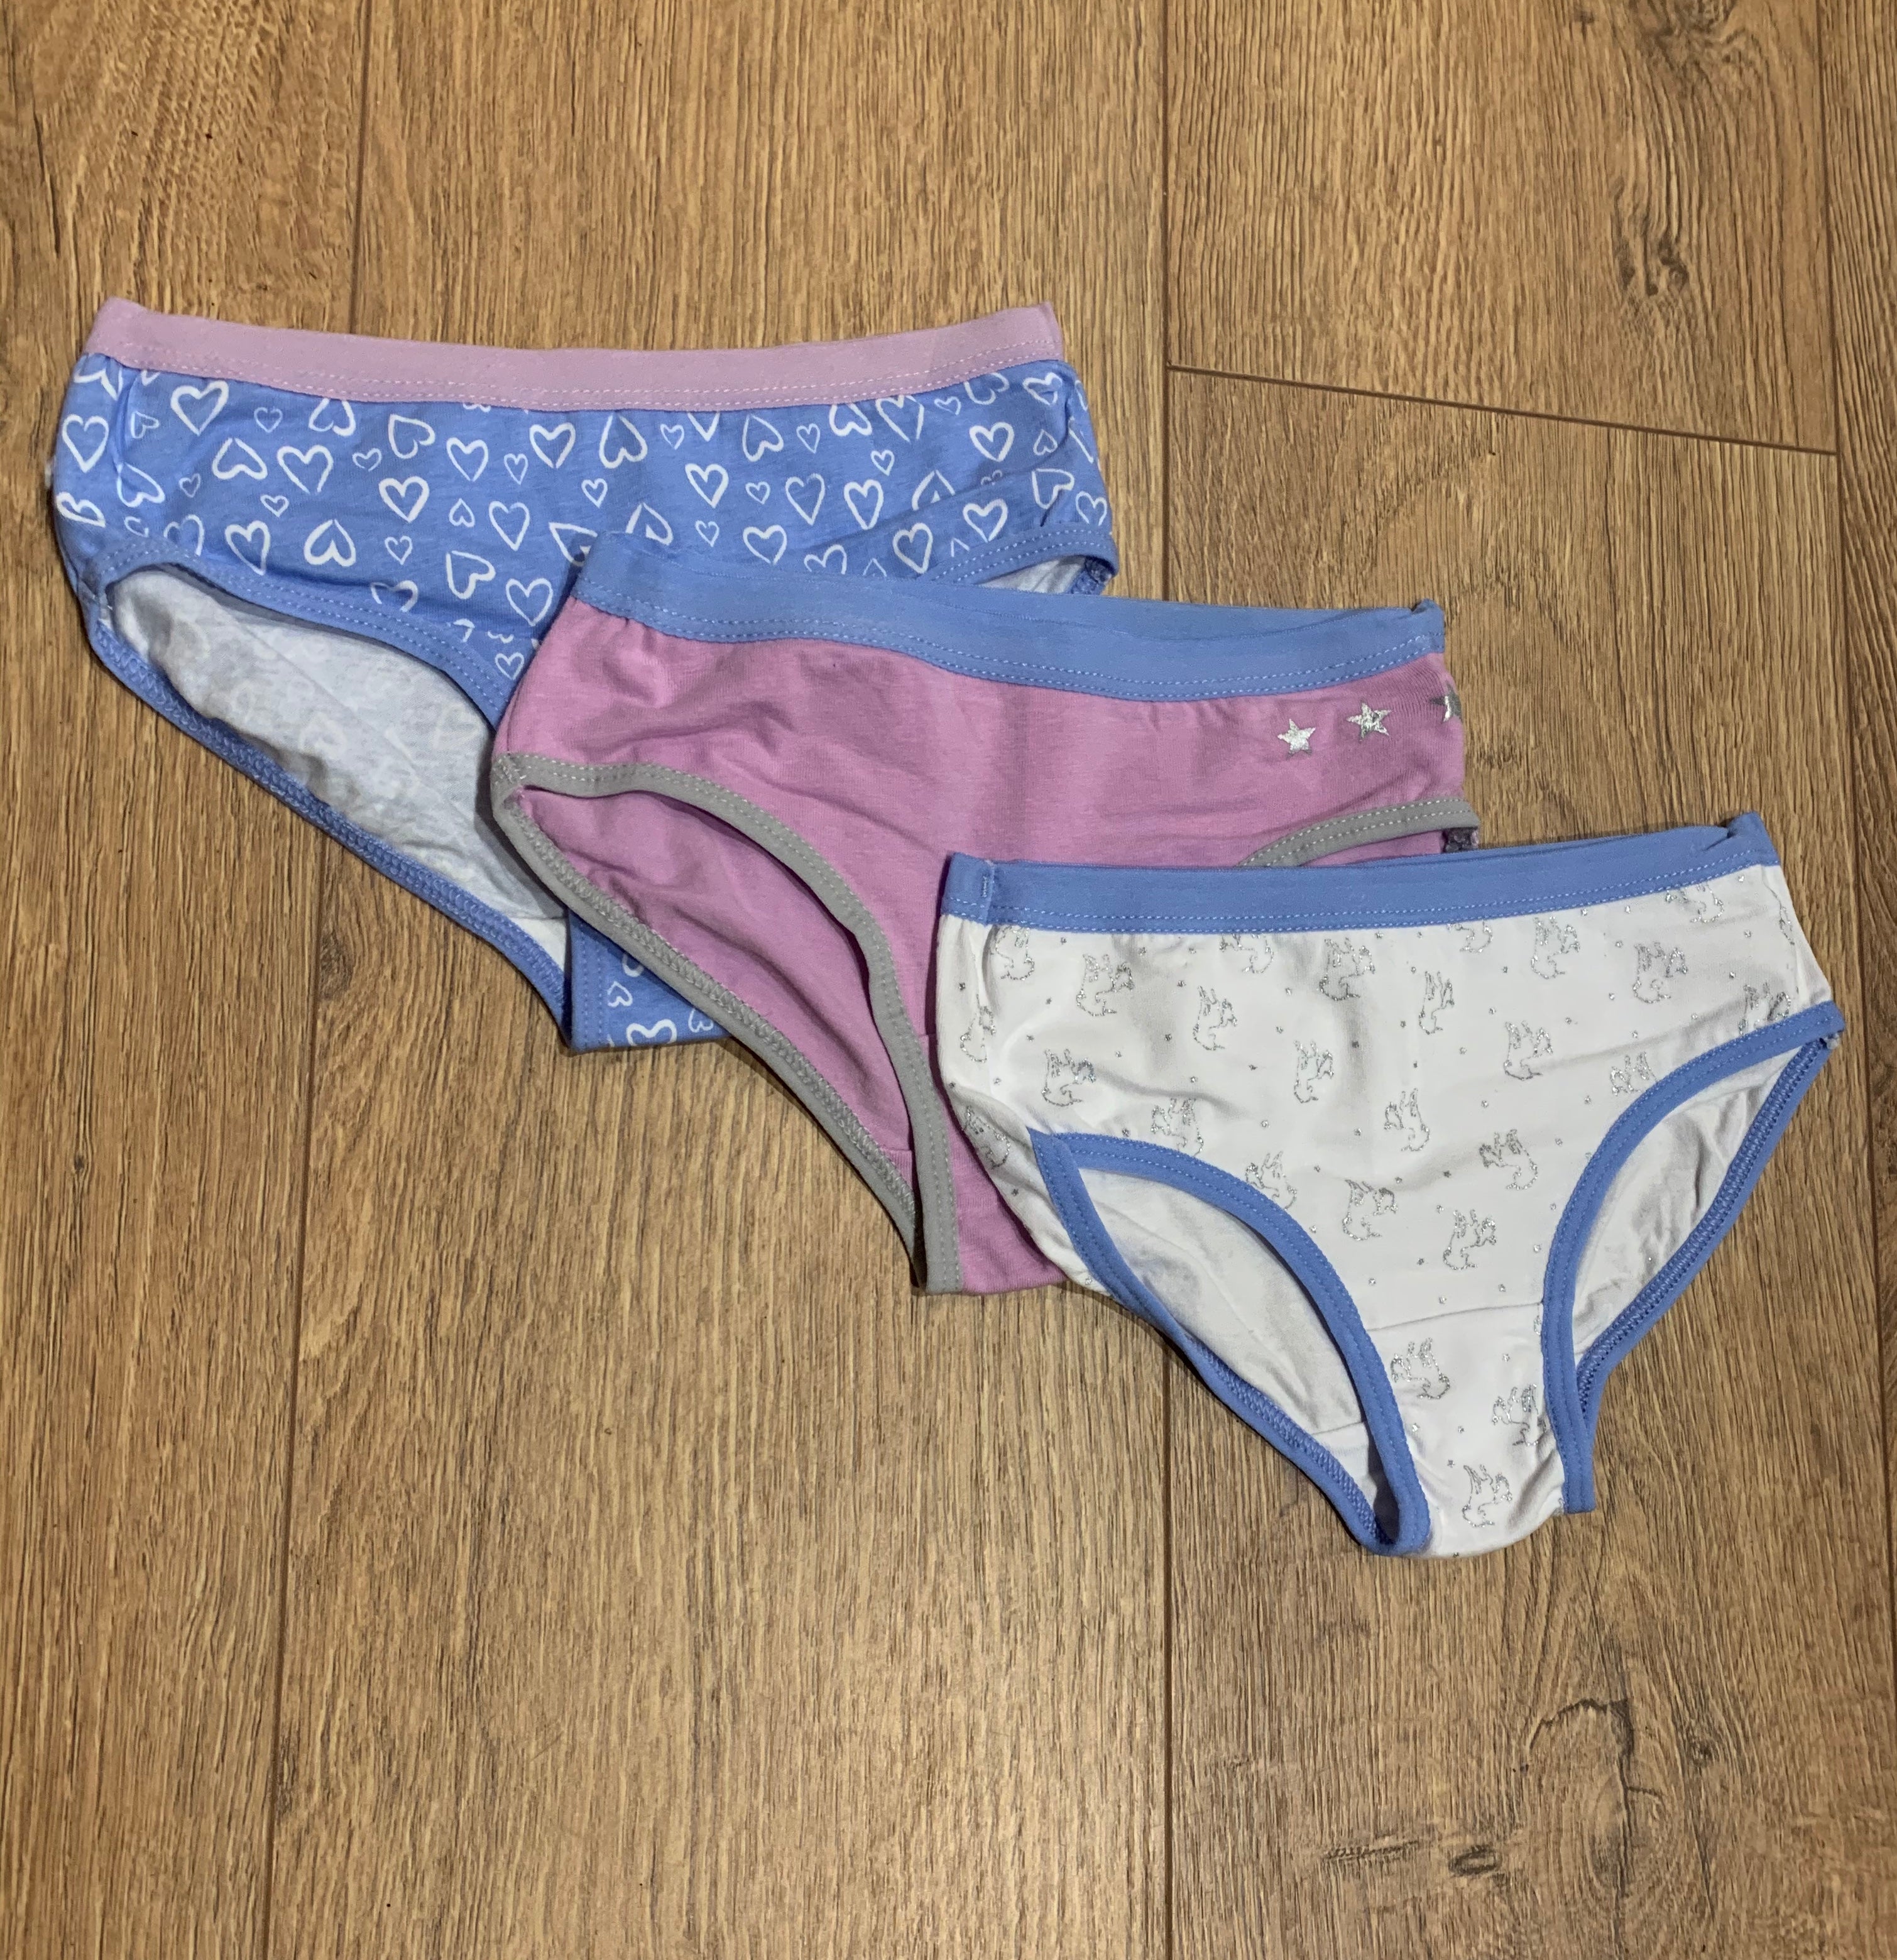 Nass Underwear – Little Earth Children's Store